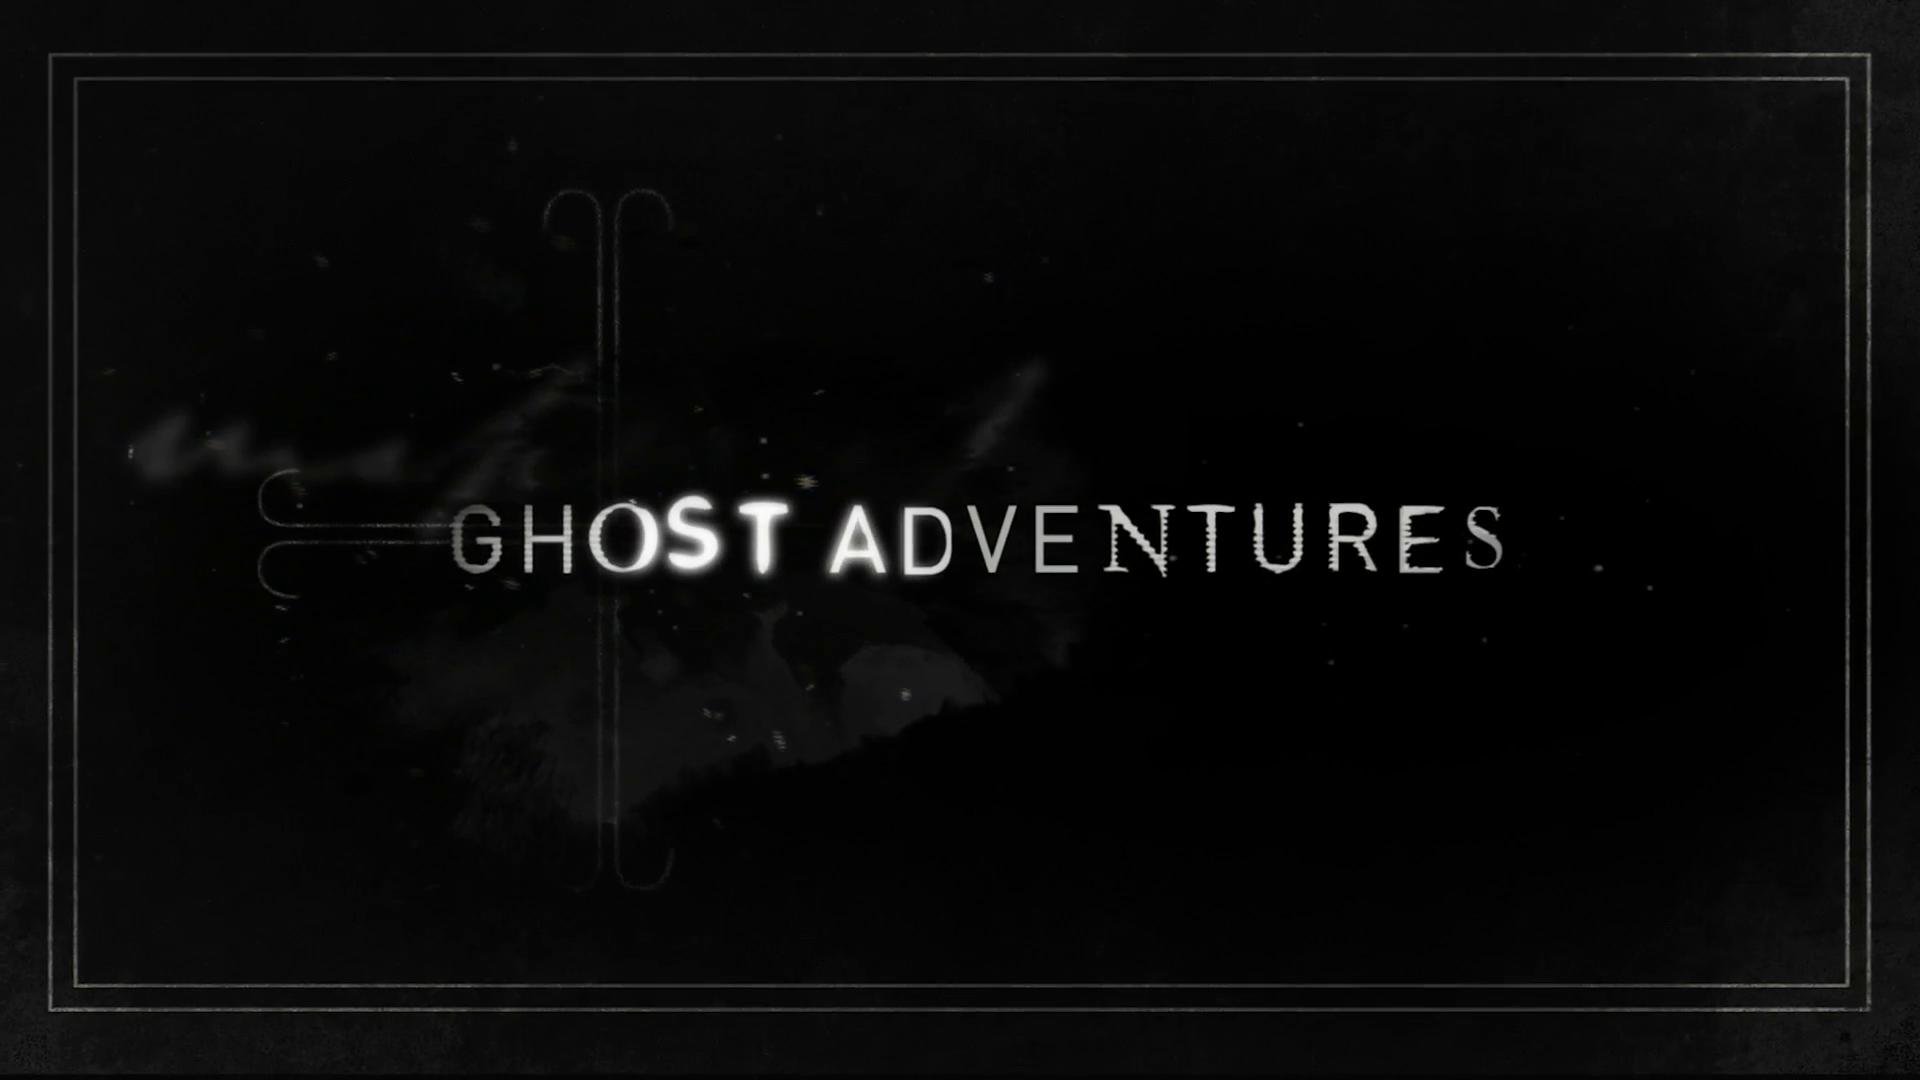 Ghost Adventures: Aftershocks Wallpapers